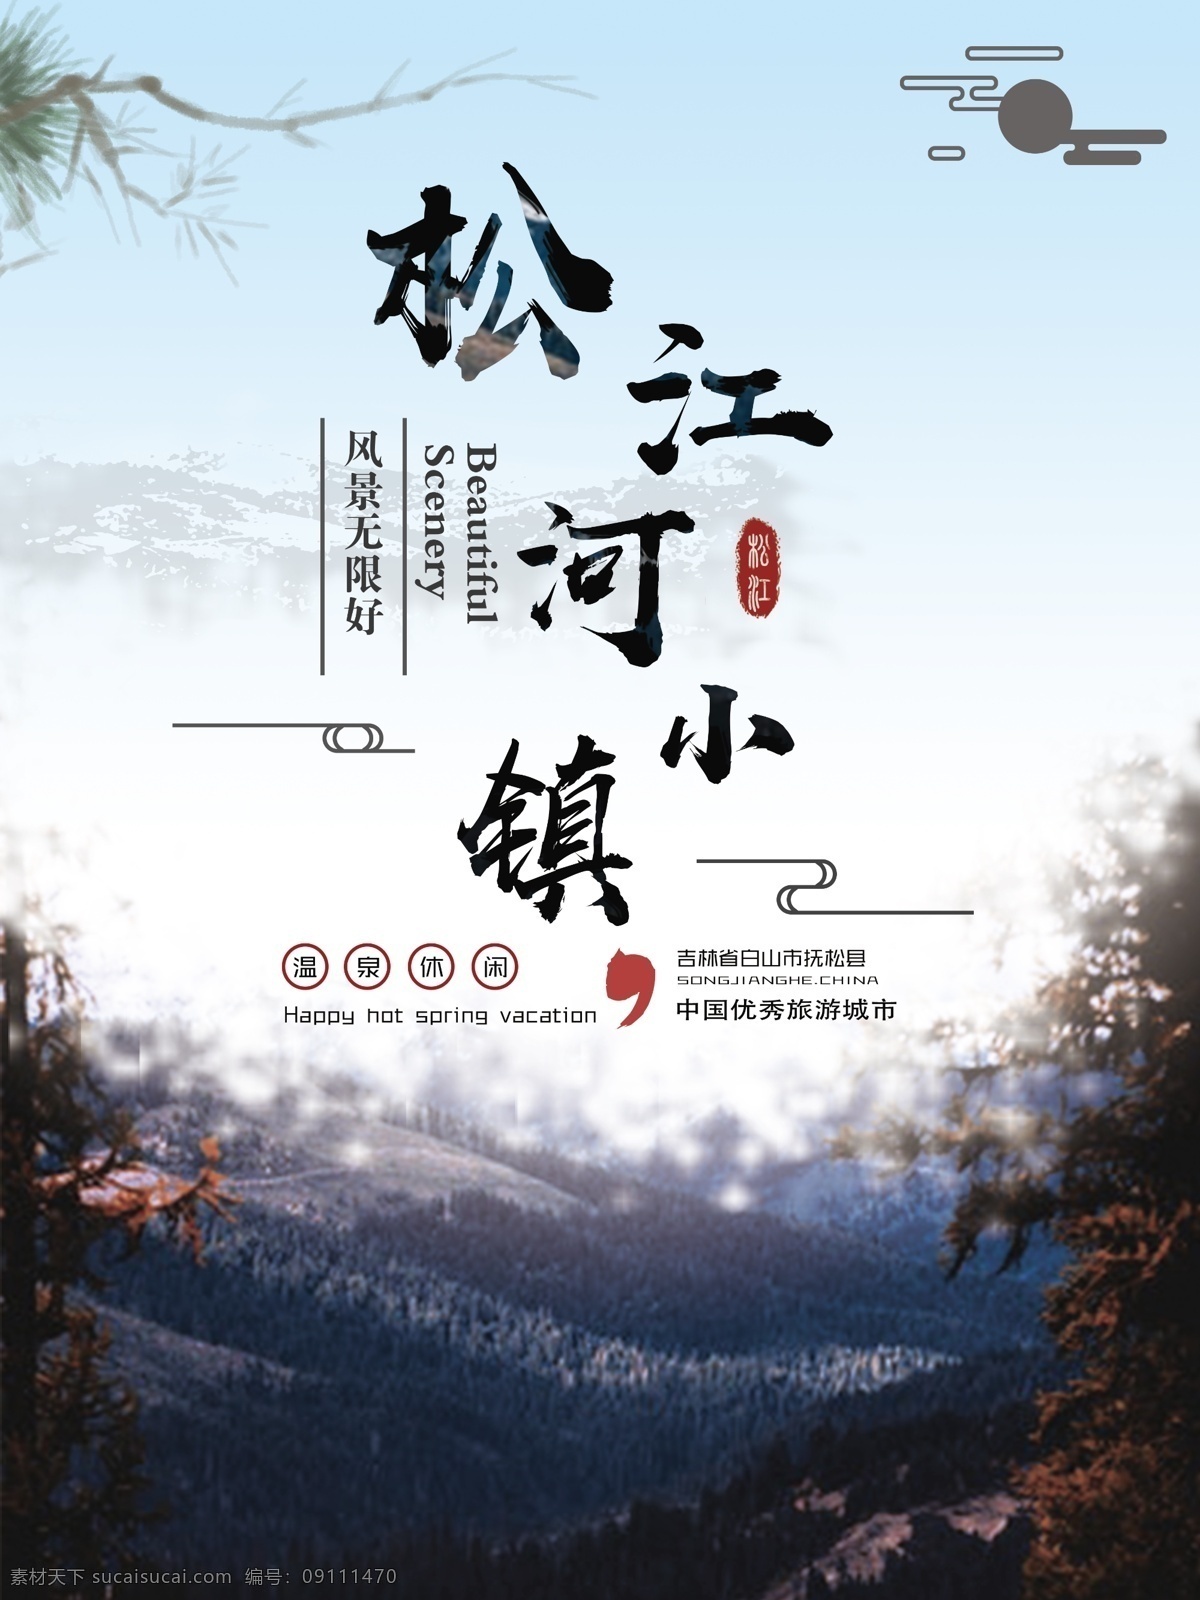 原创 冷 色系 手绘 简约 松江河 小镇 旅游 海报 蓝色 中国风 云纹 冷色系 视觉